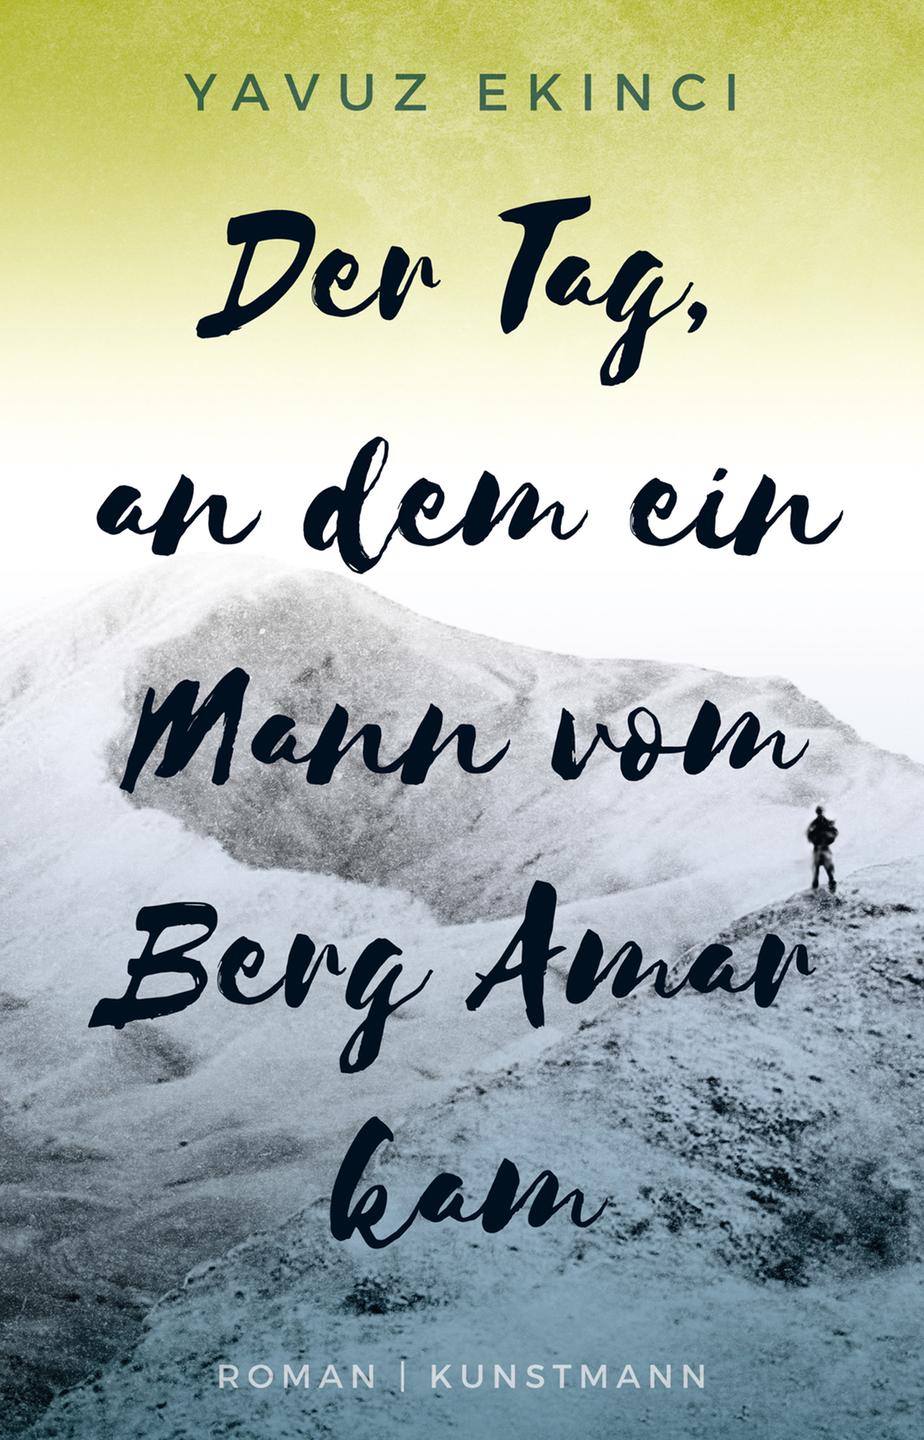 Buchcover: Yavuz Ekinci "Der Tag, an dem ein Mann vom Berg Amar kam"